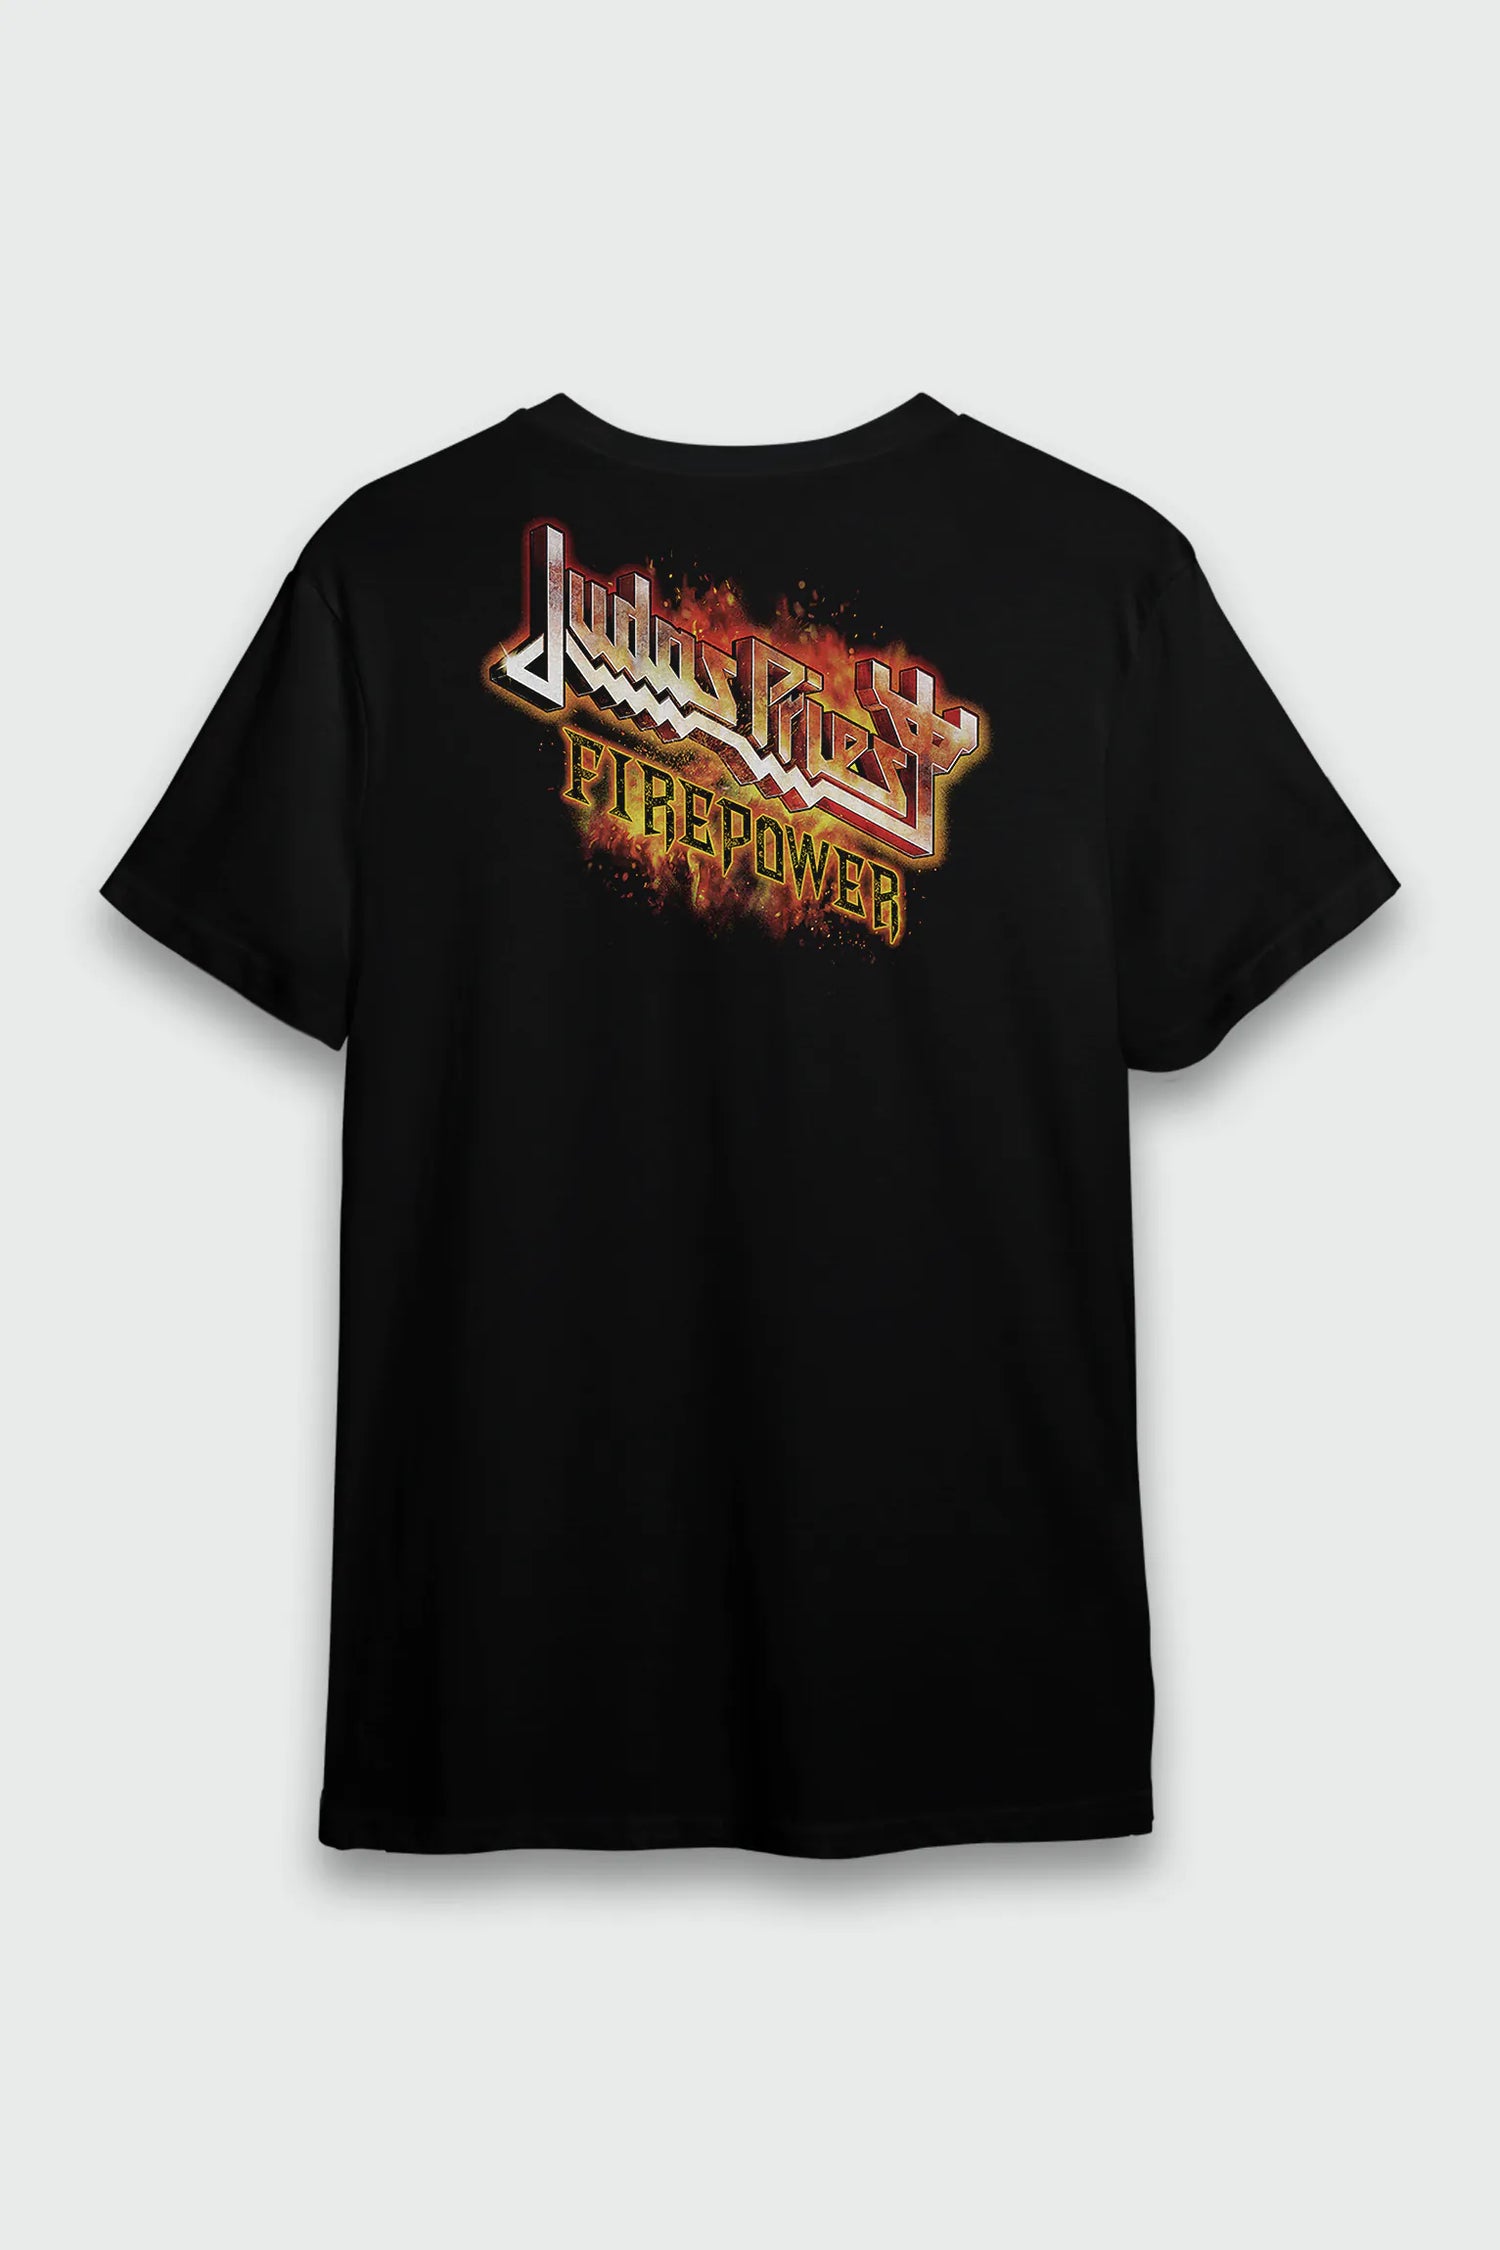 Camiseta Judas Priest Firepower